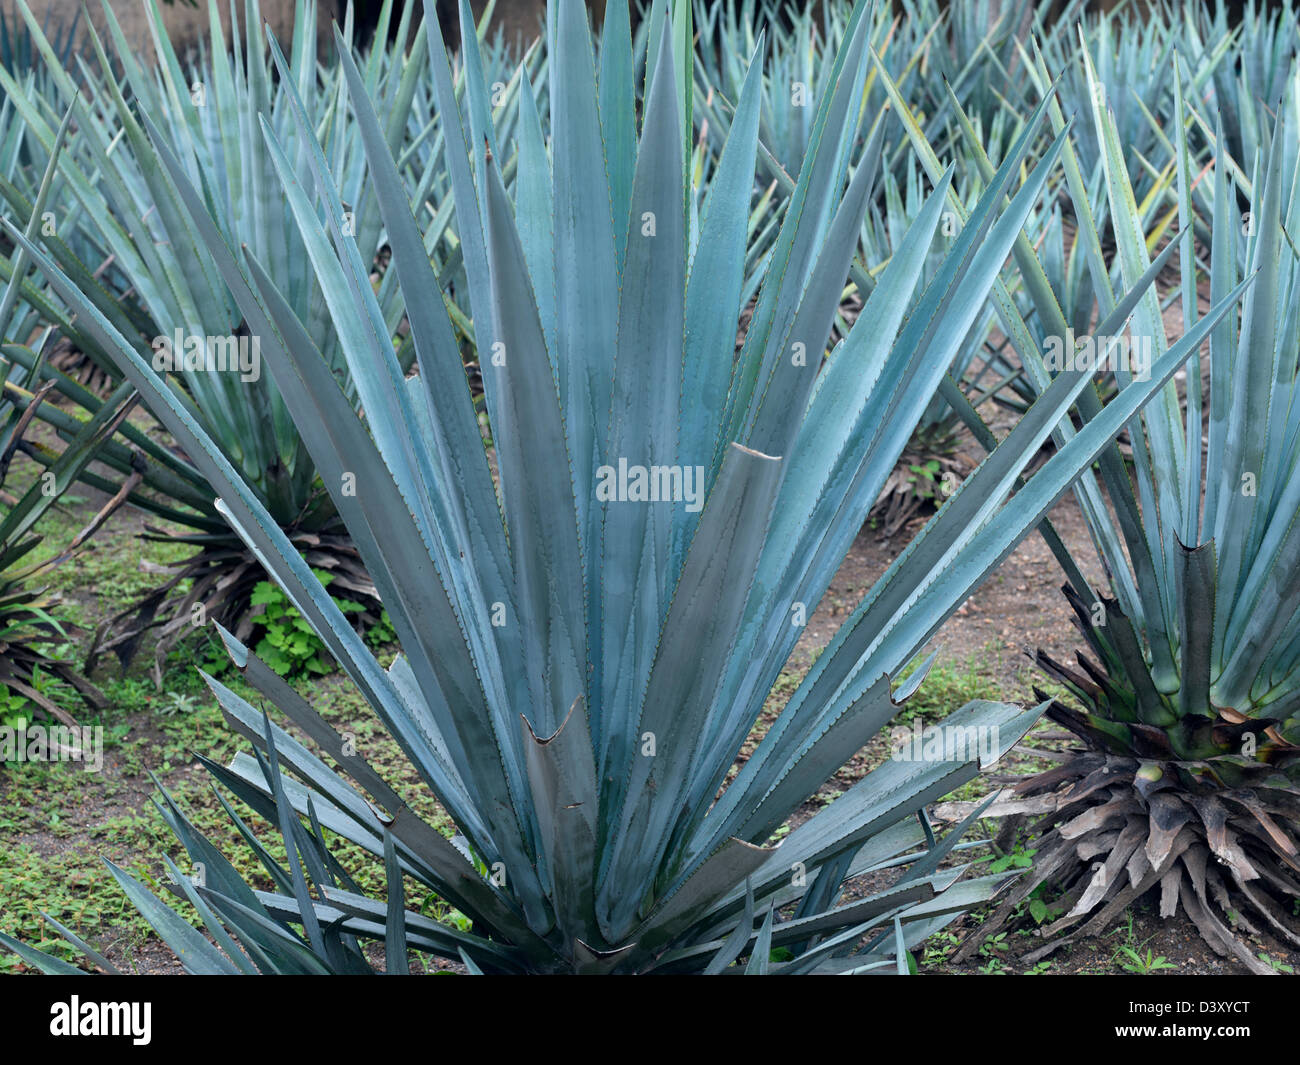 Pianta di tequila immagini e fotografie stock ad alta risoluzione - Alamy